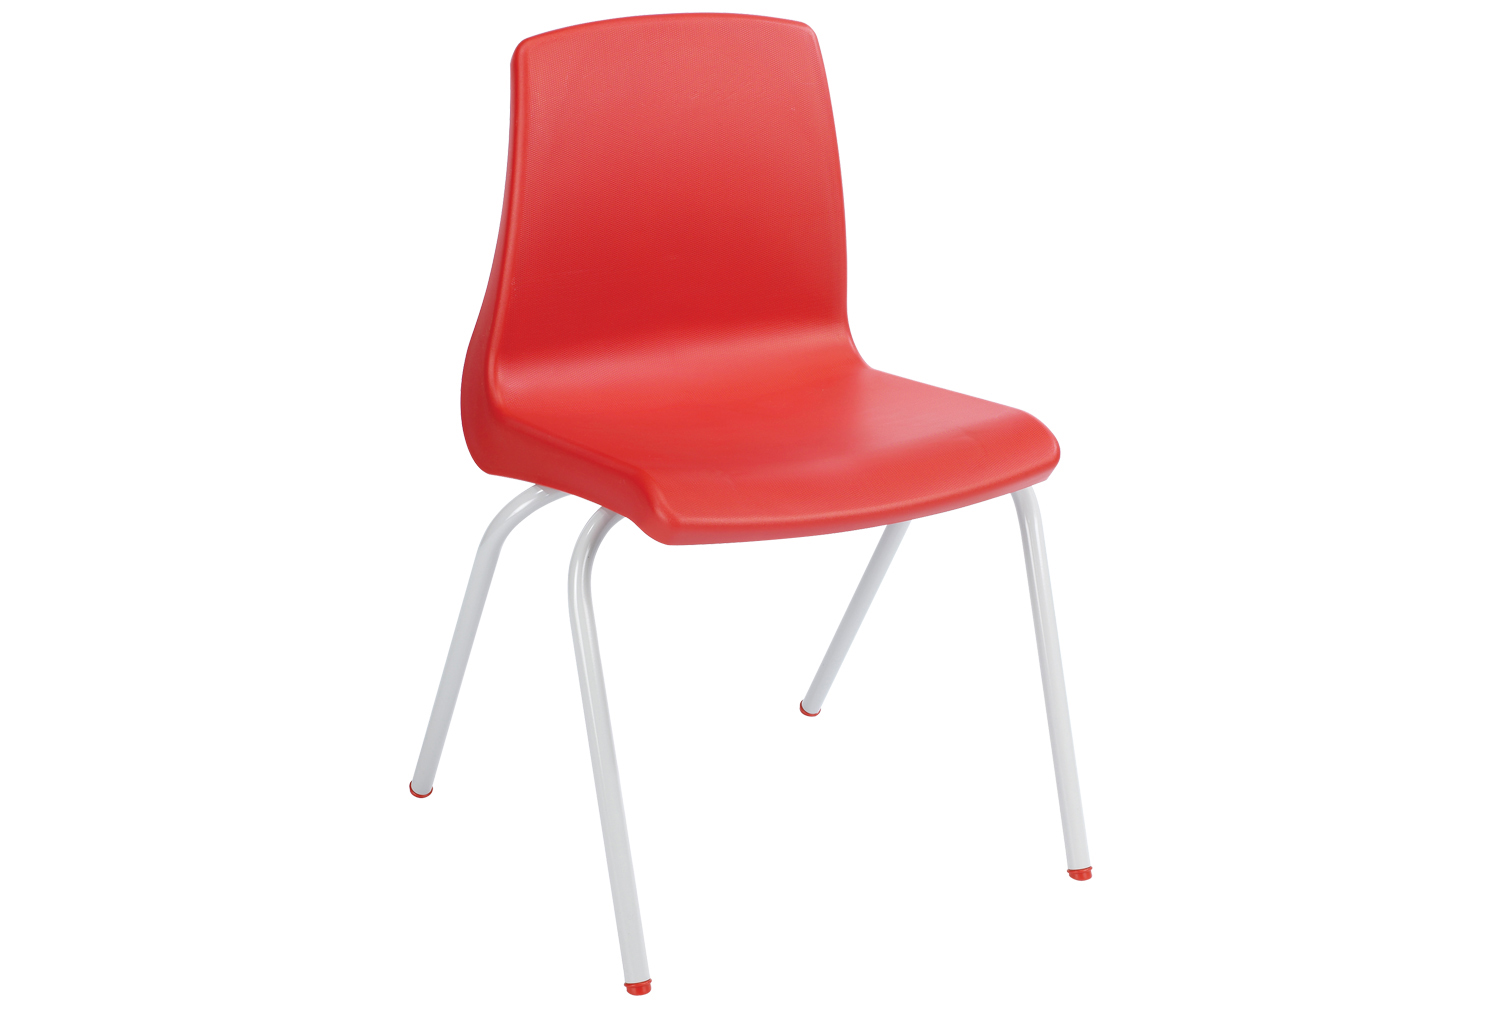 Metalliform NP Classroom Chair